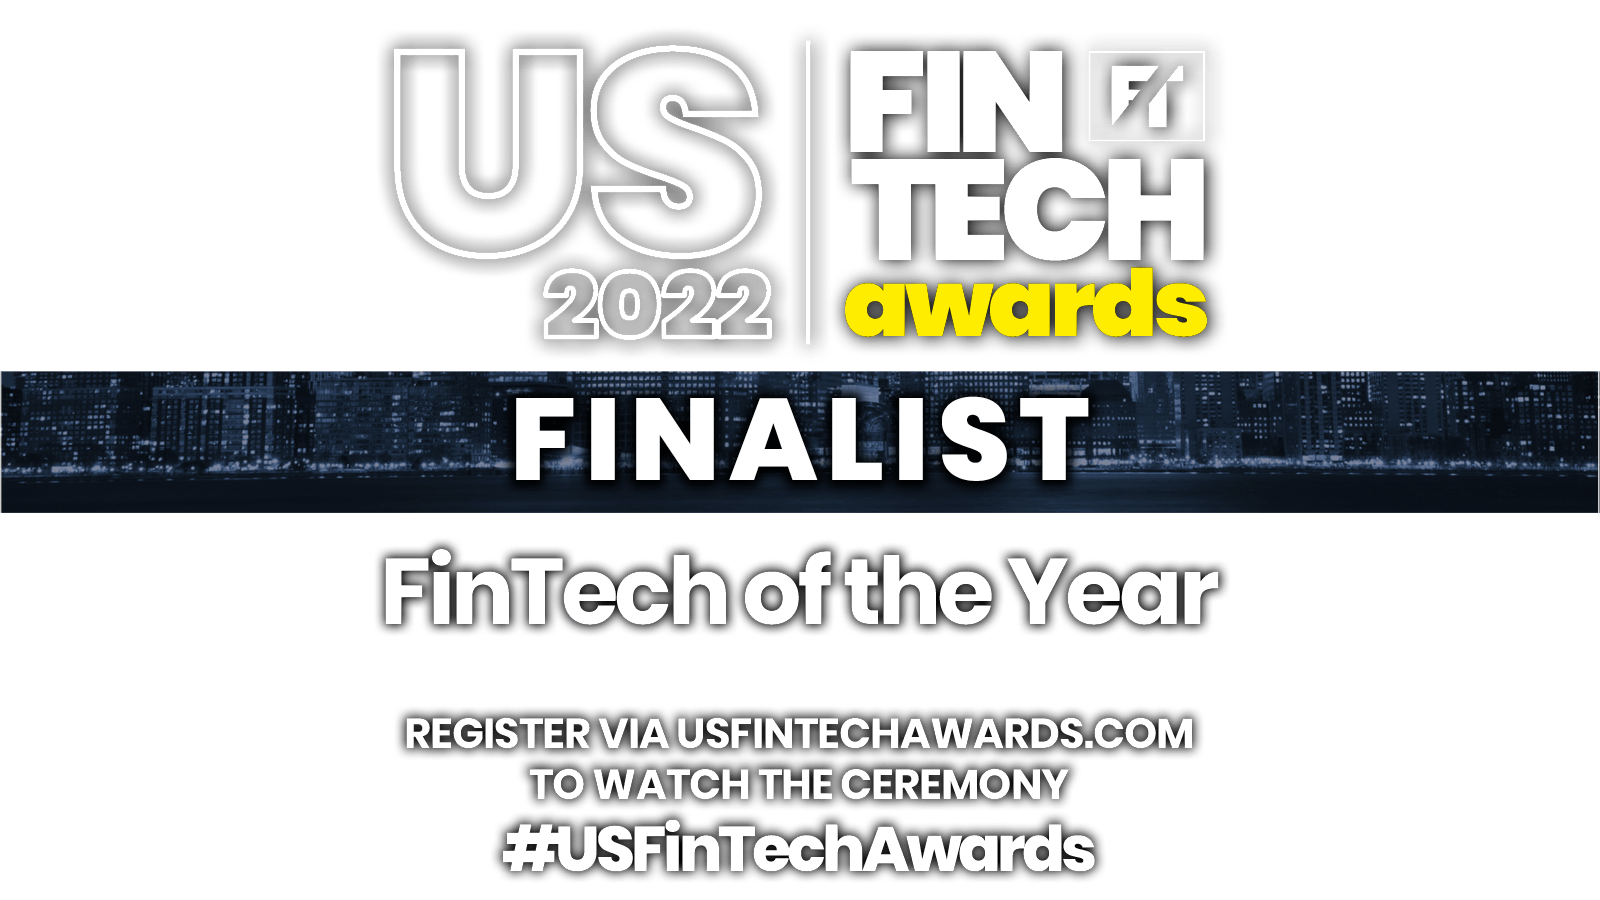 US Fintech Awards 2022 Finalist